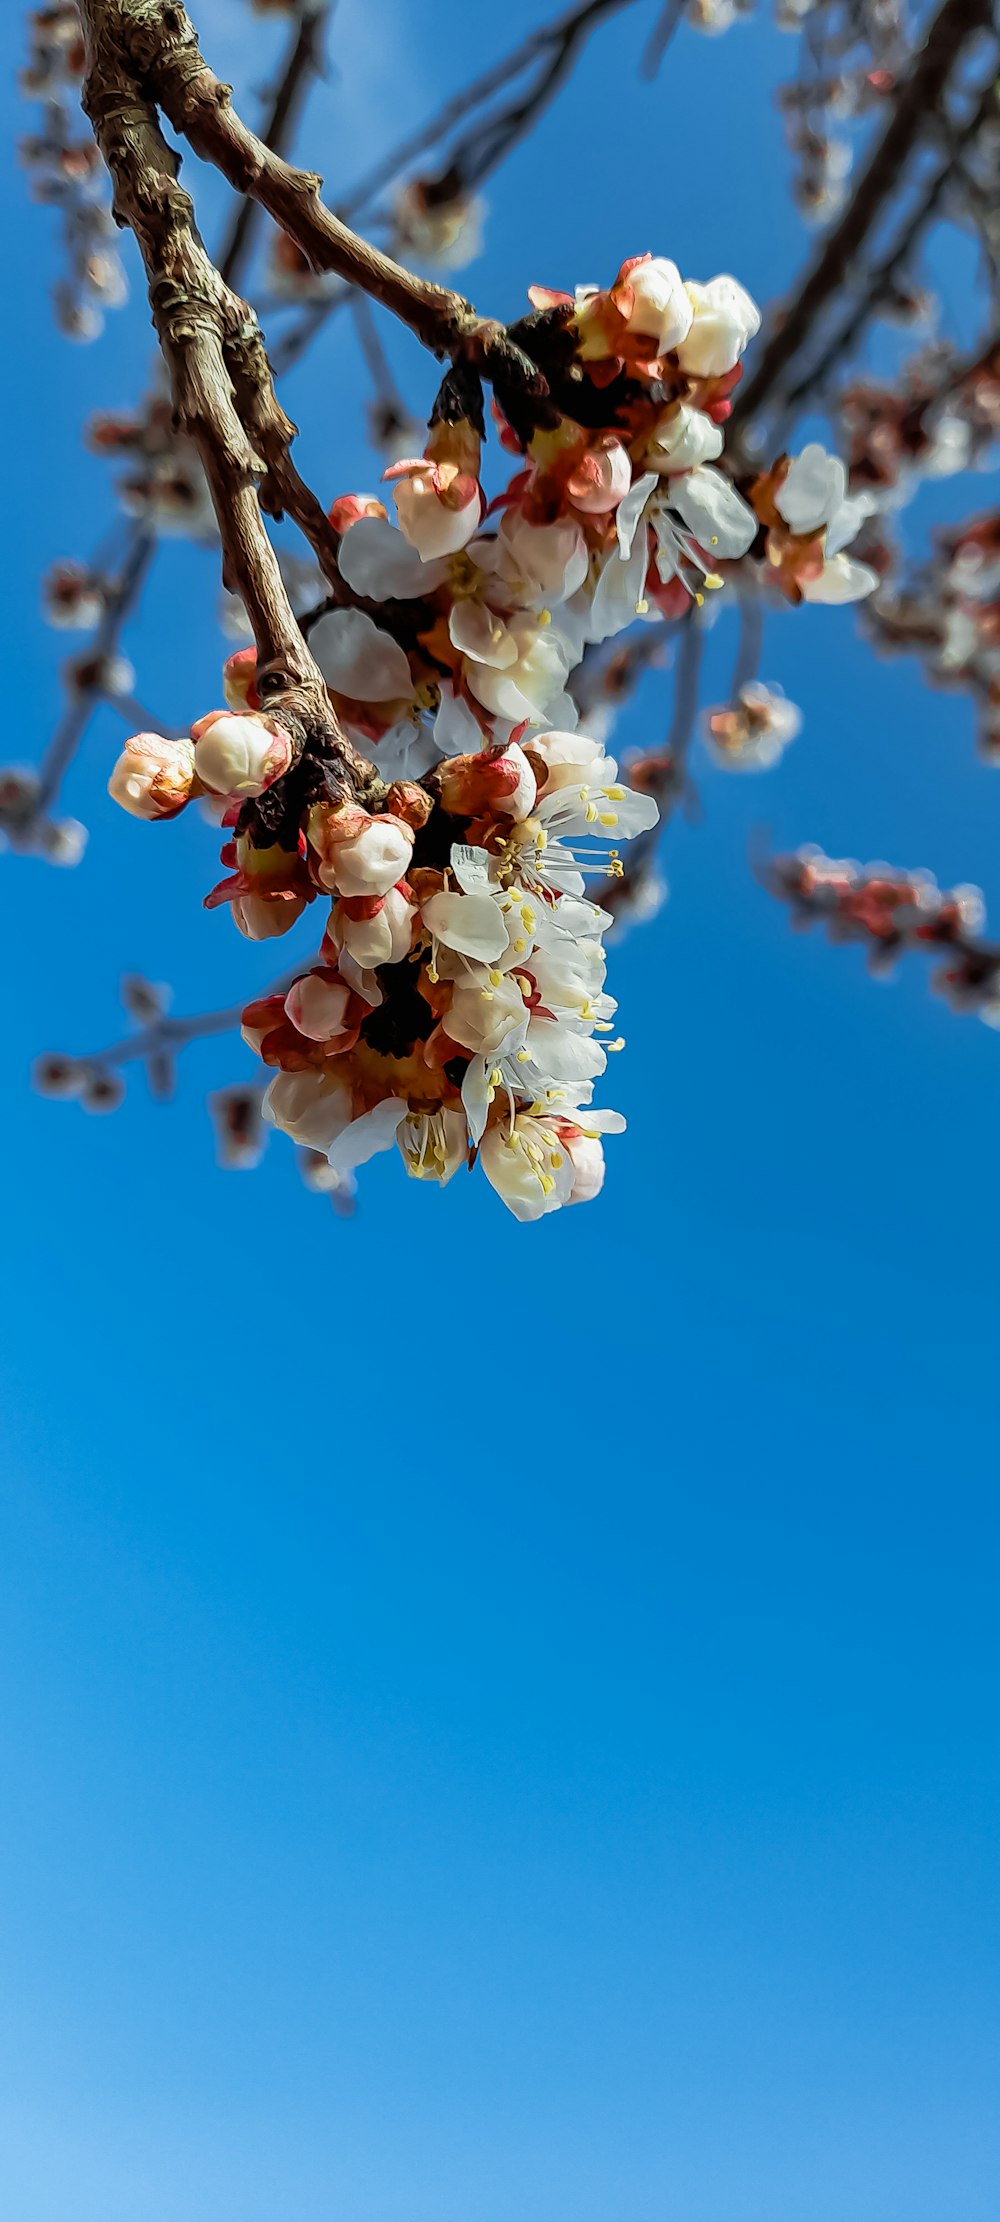 una rama de árbol con flores blancas contra un cielo azul